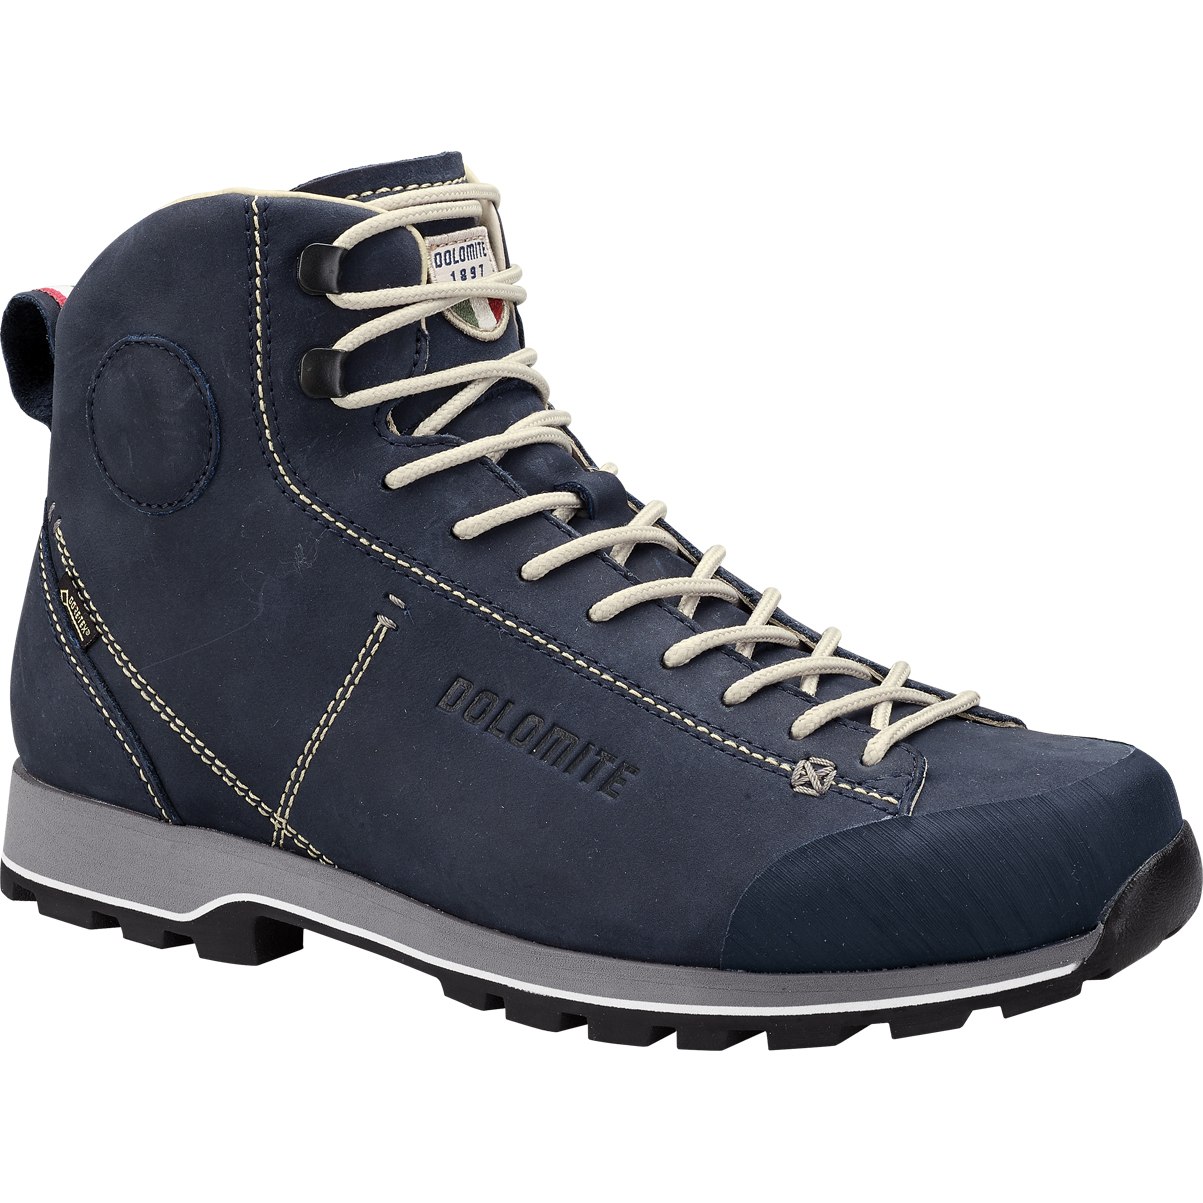 Produktbild von Dolomite 54 High FG GTX Schuhe Herren - blue navy